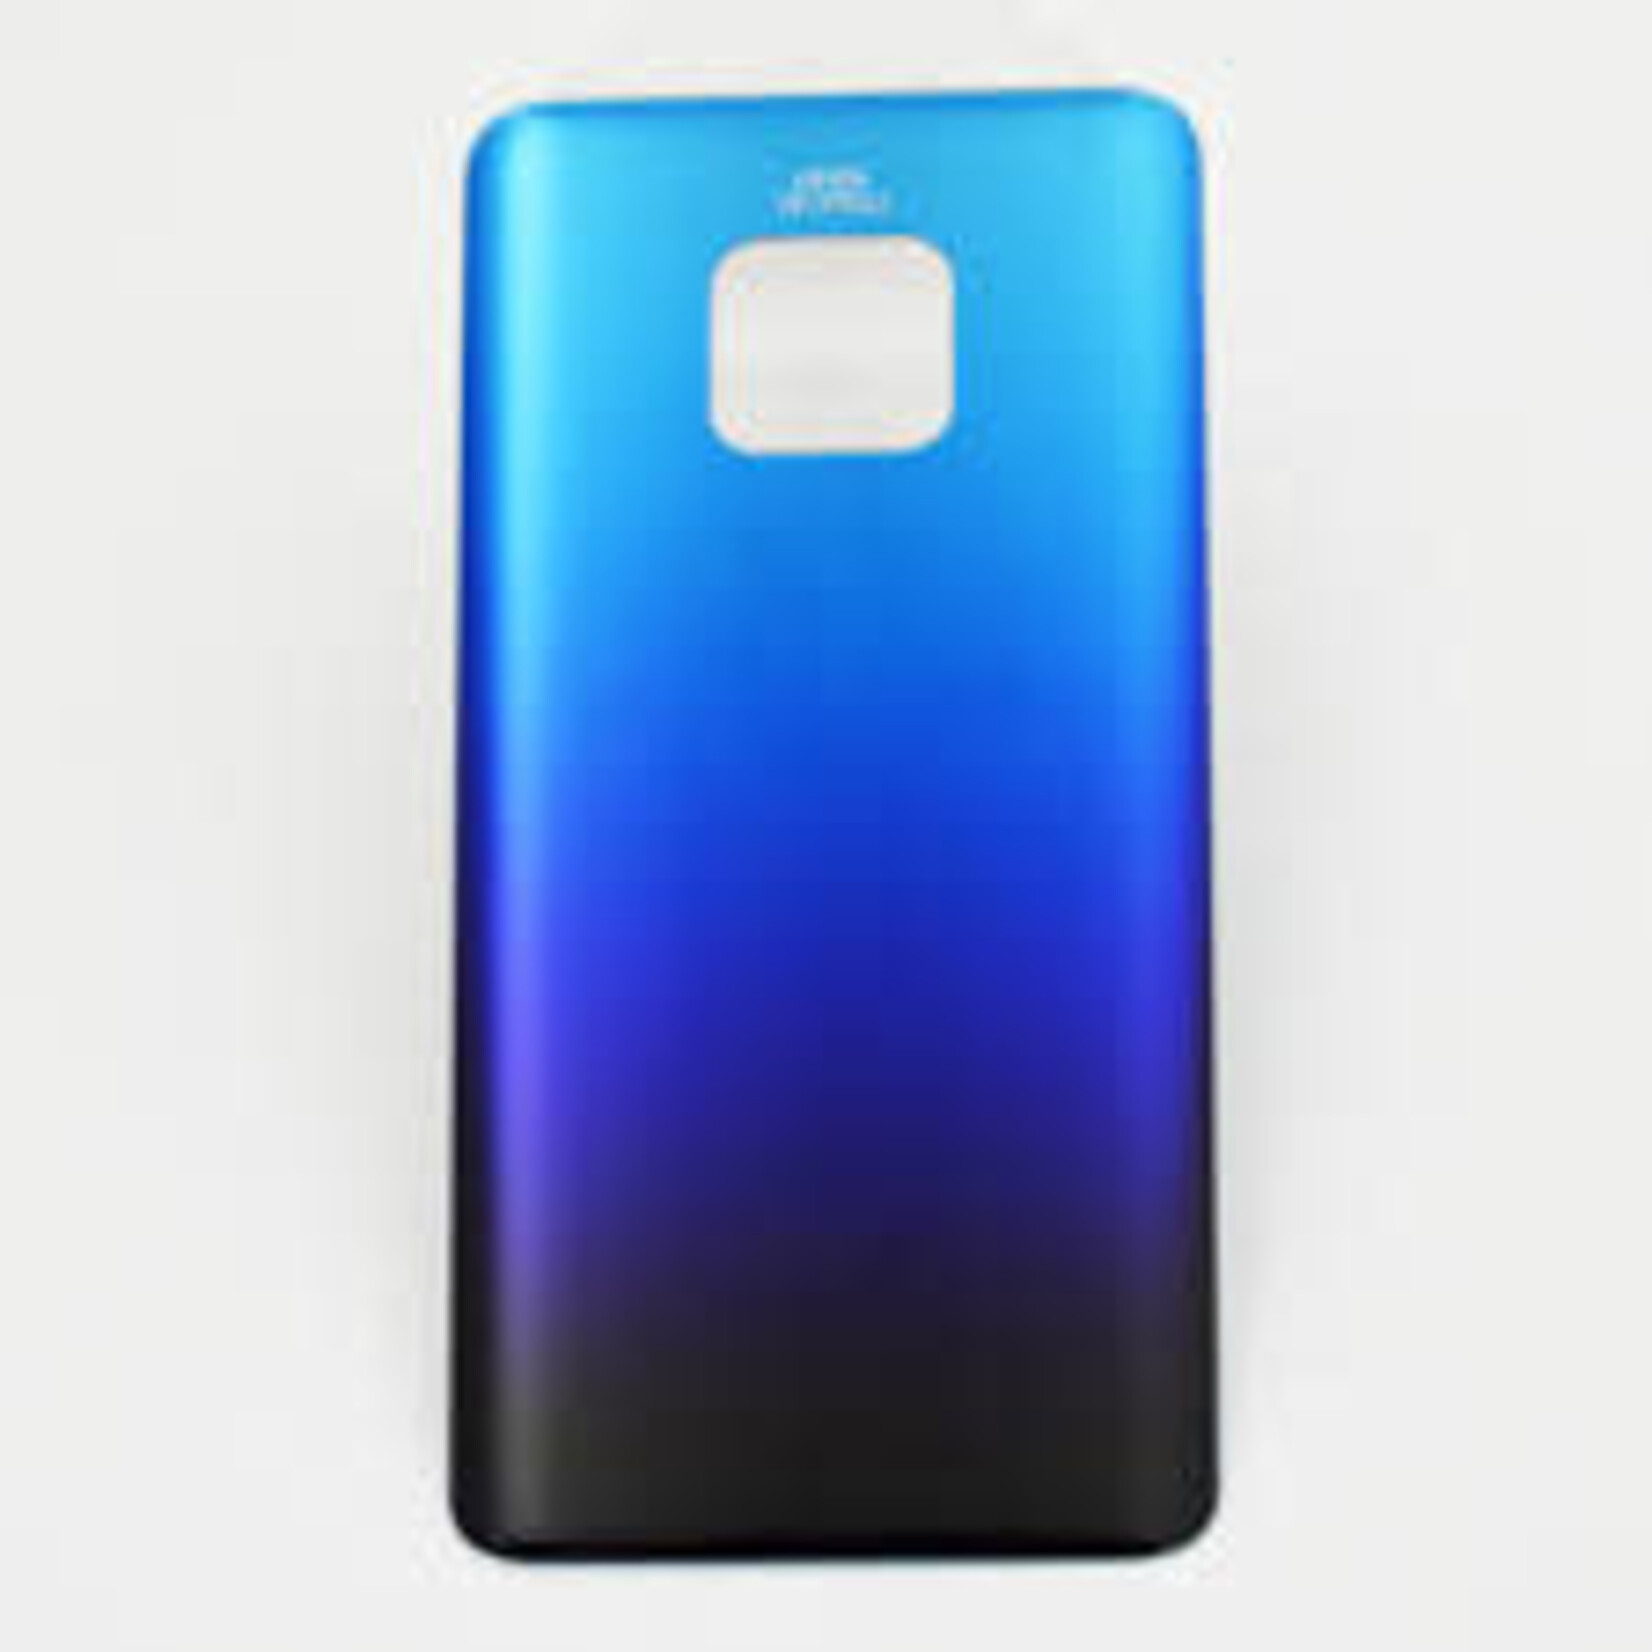 Huawei BACK COVER BATTERY BLEU BLUE HUAWEI MATE 20 PRO